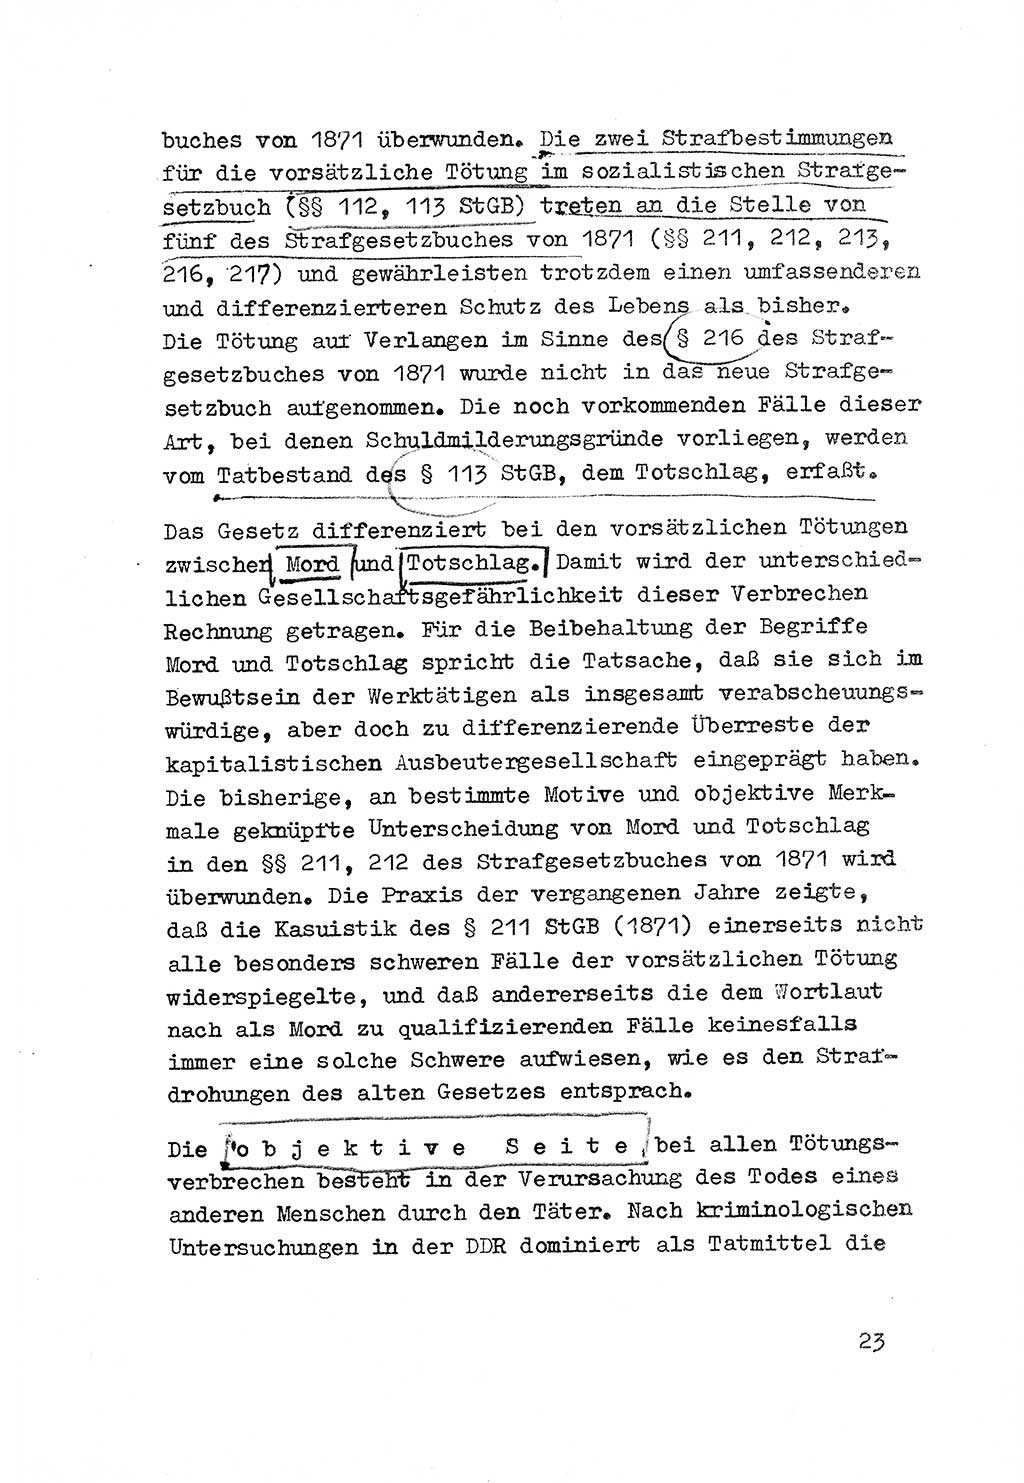 Strafrecht der DDR (Deutsche Demokratische Republik), Besonderer Teil, Lehrmaterial, Heft 3 1969, Seite 23 (Strafr. DDR BT Lehrmat. H. 3 1969, S. 23)